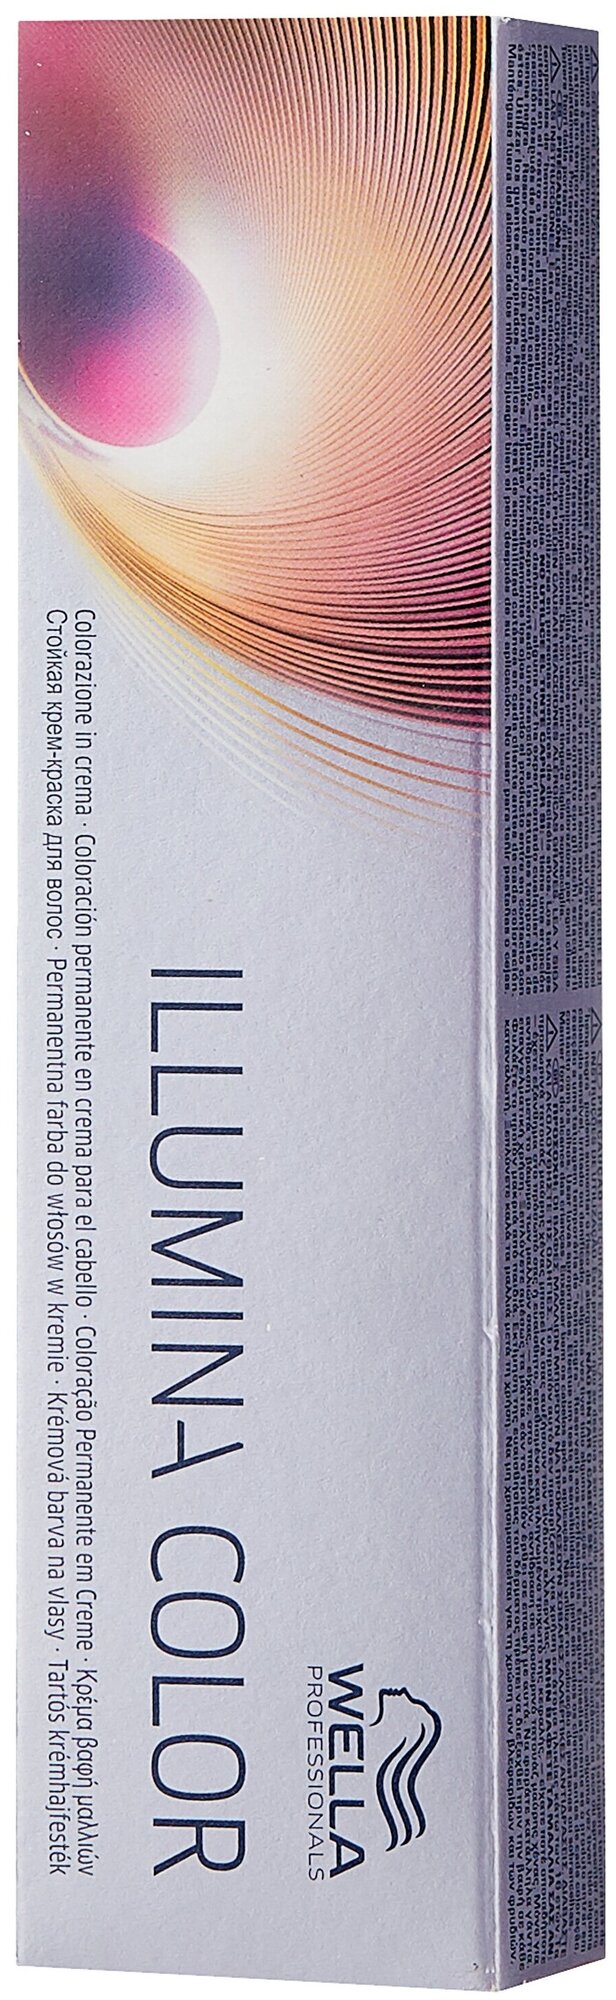 Wella Professionals Illumina Color стойкая крем-краска для волос, 8/37 светлый блонд золотисто-коричневый, 60 мл